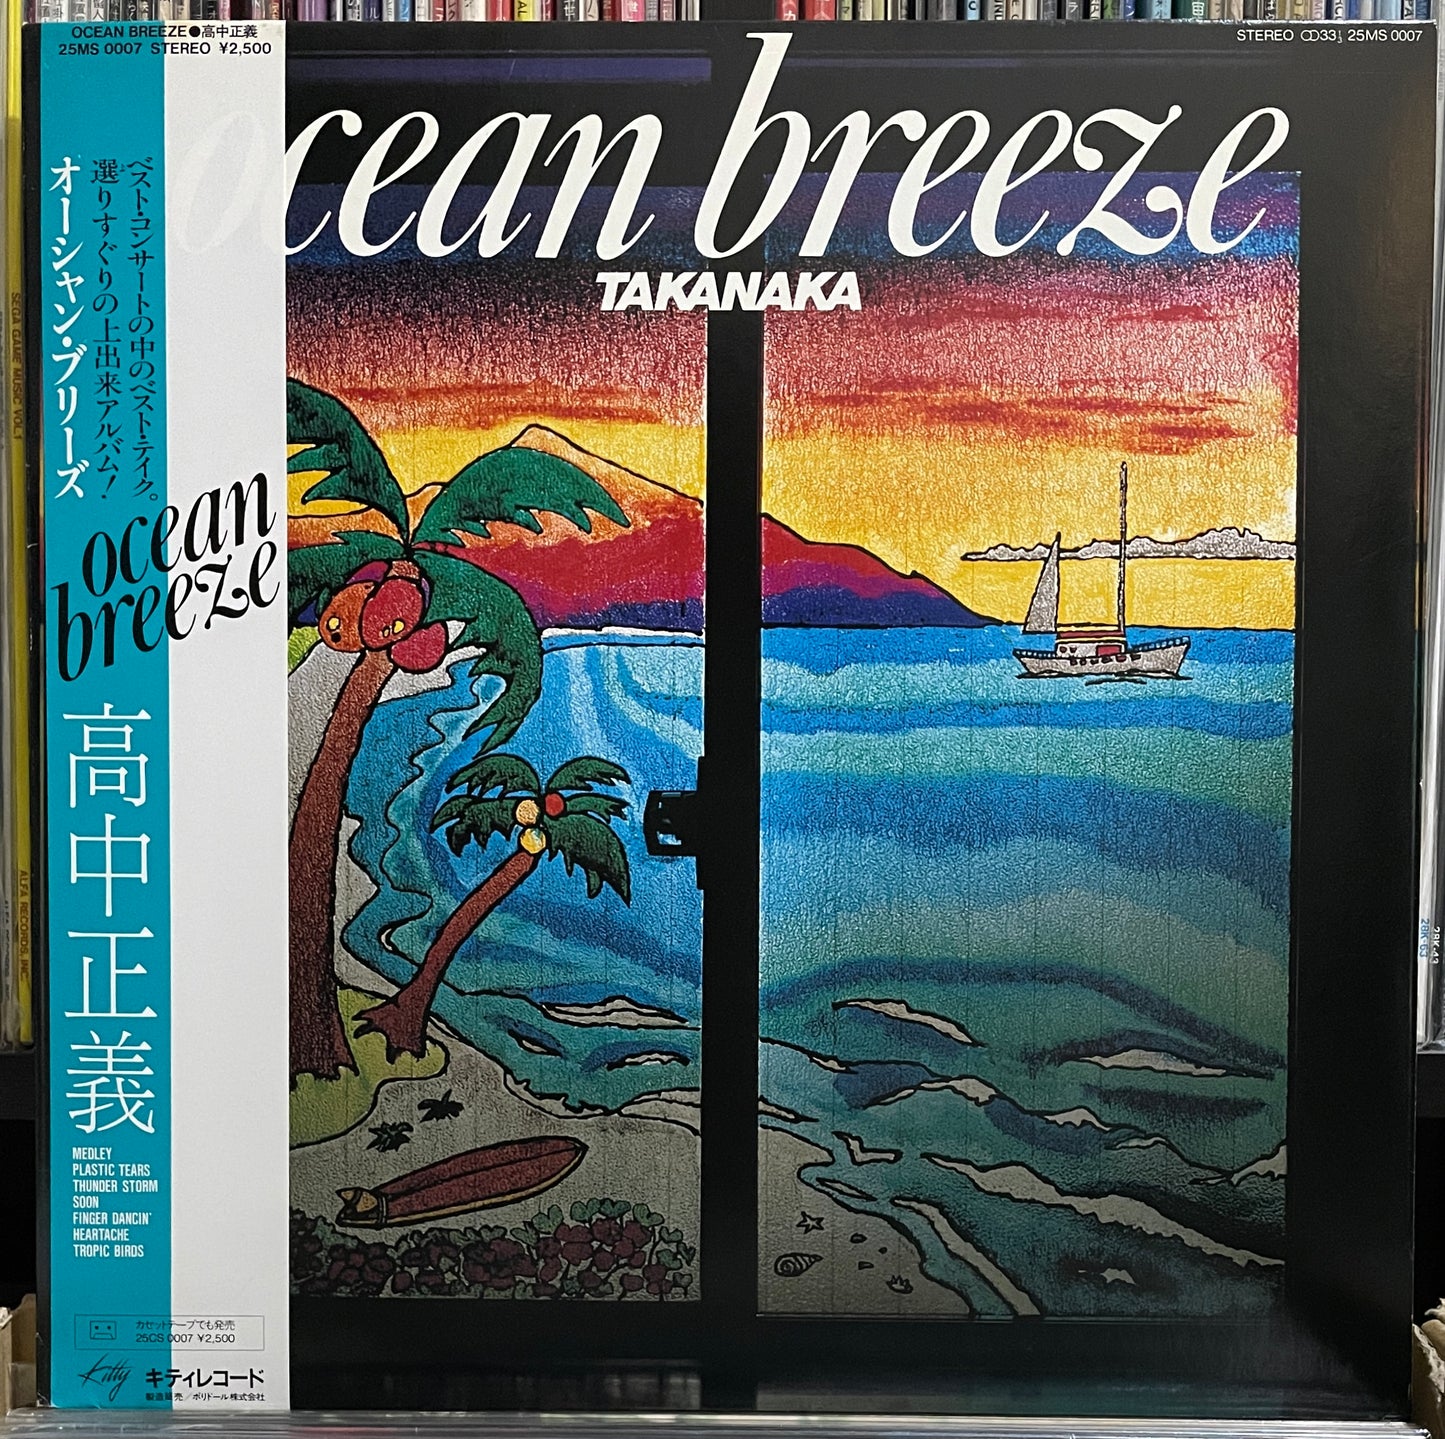 Masayoshi Takanaka “Ocean Breeze” (1982)